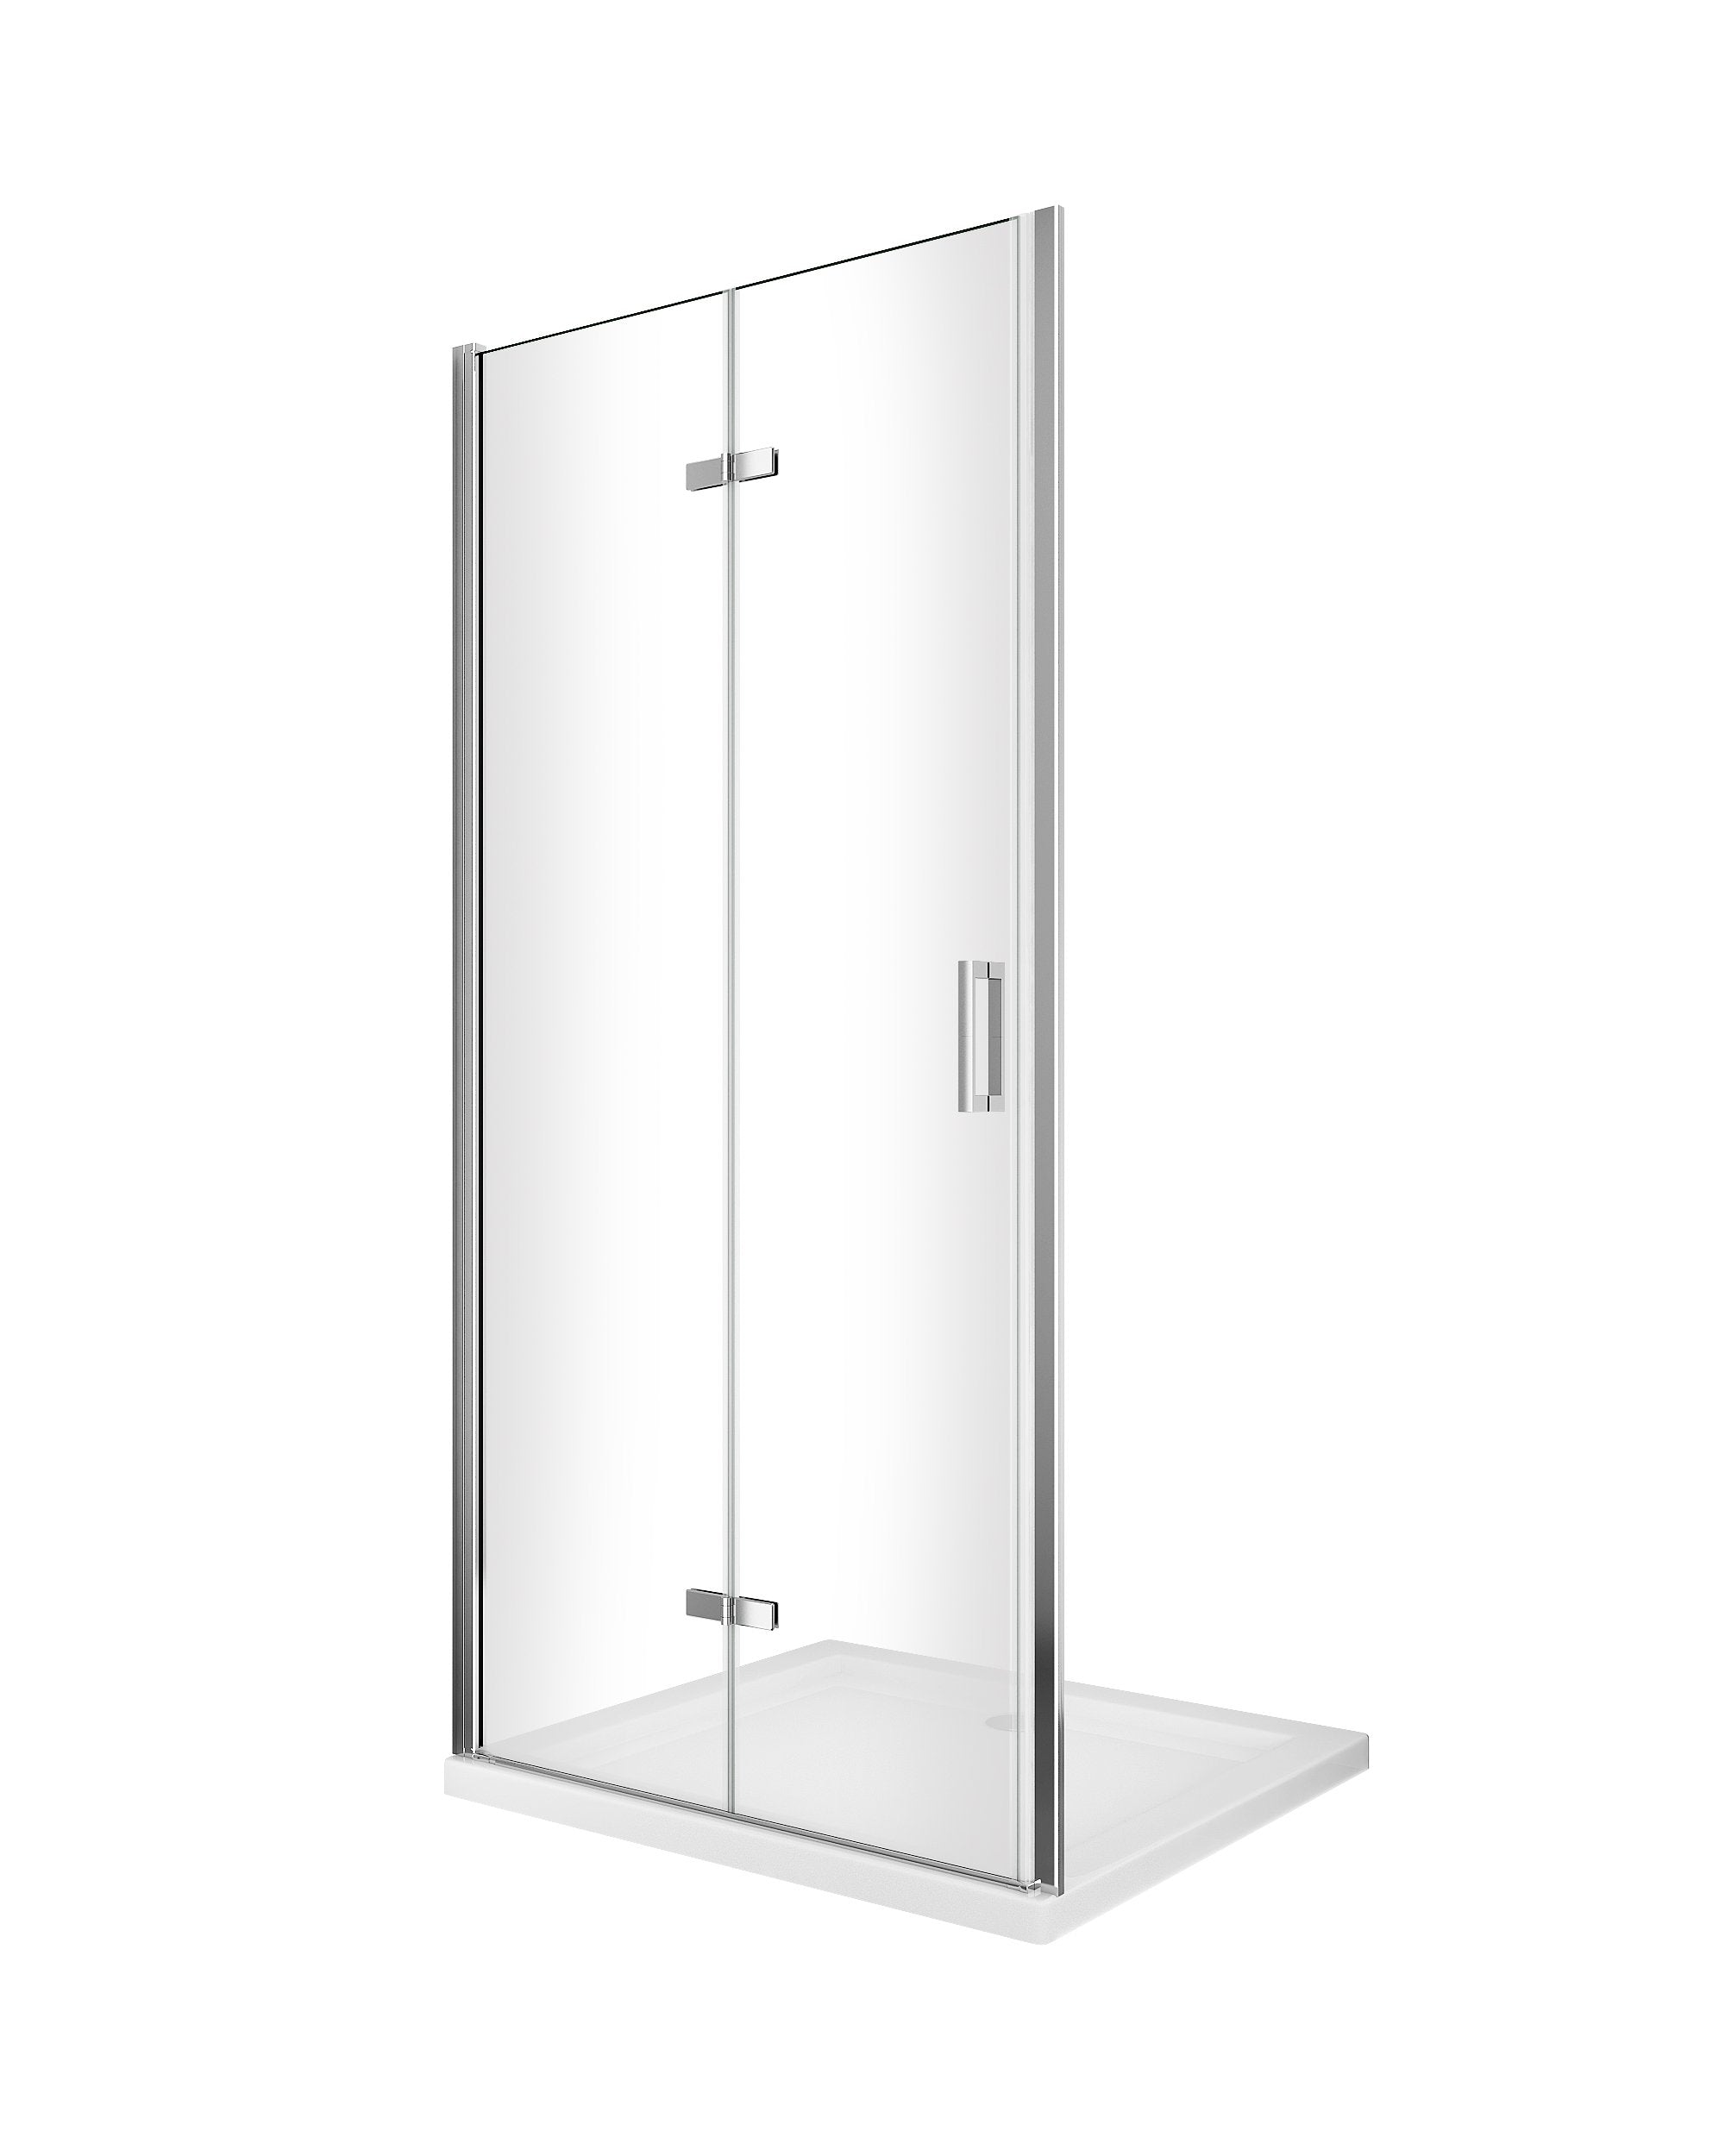 Porta box doccia con apertura a libro pieghevole a soffietto per installazione in nicchia H 190 cromo trasparente anticalcare misura 93-96,5